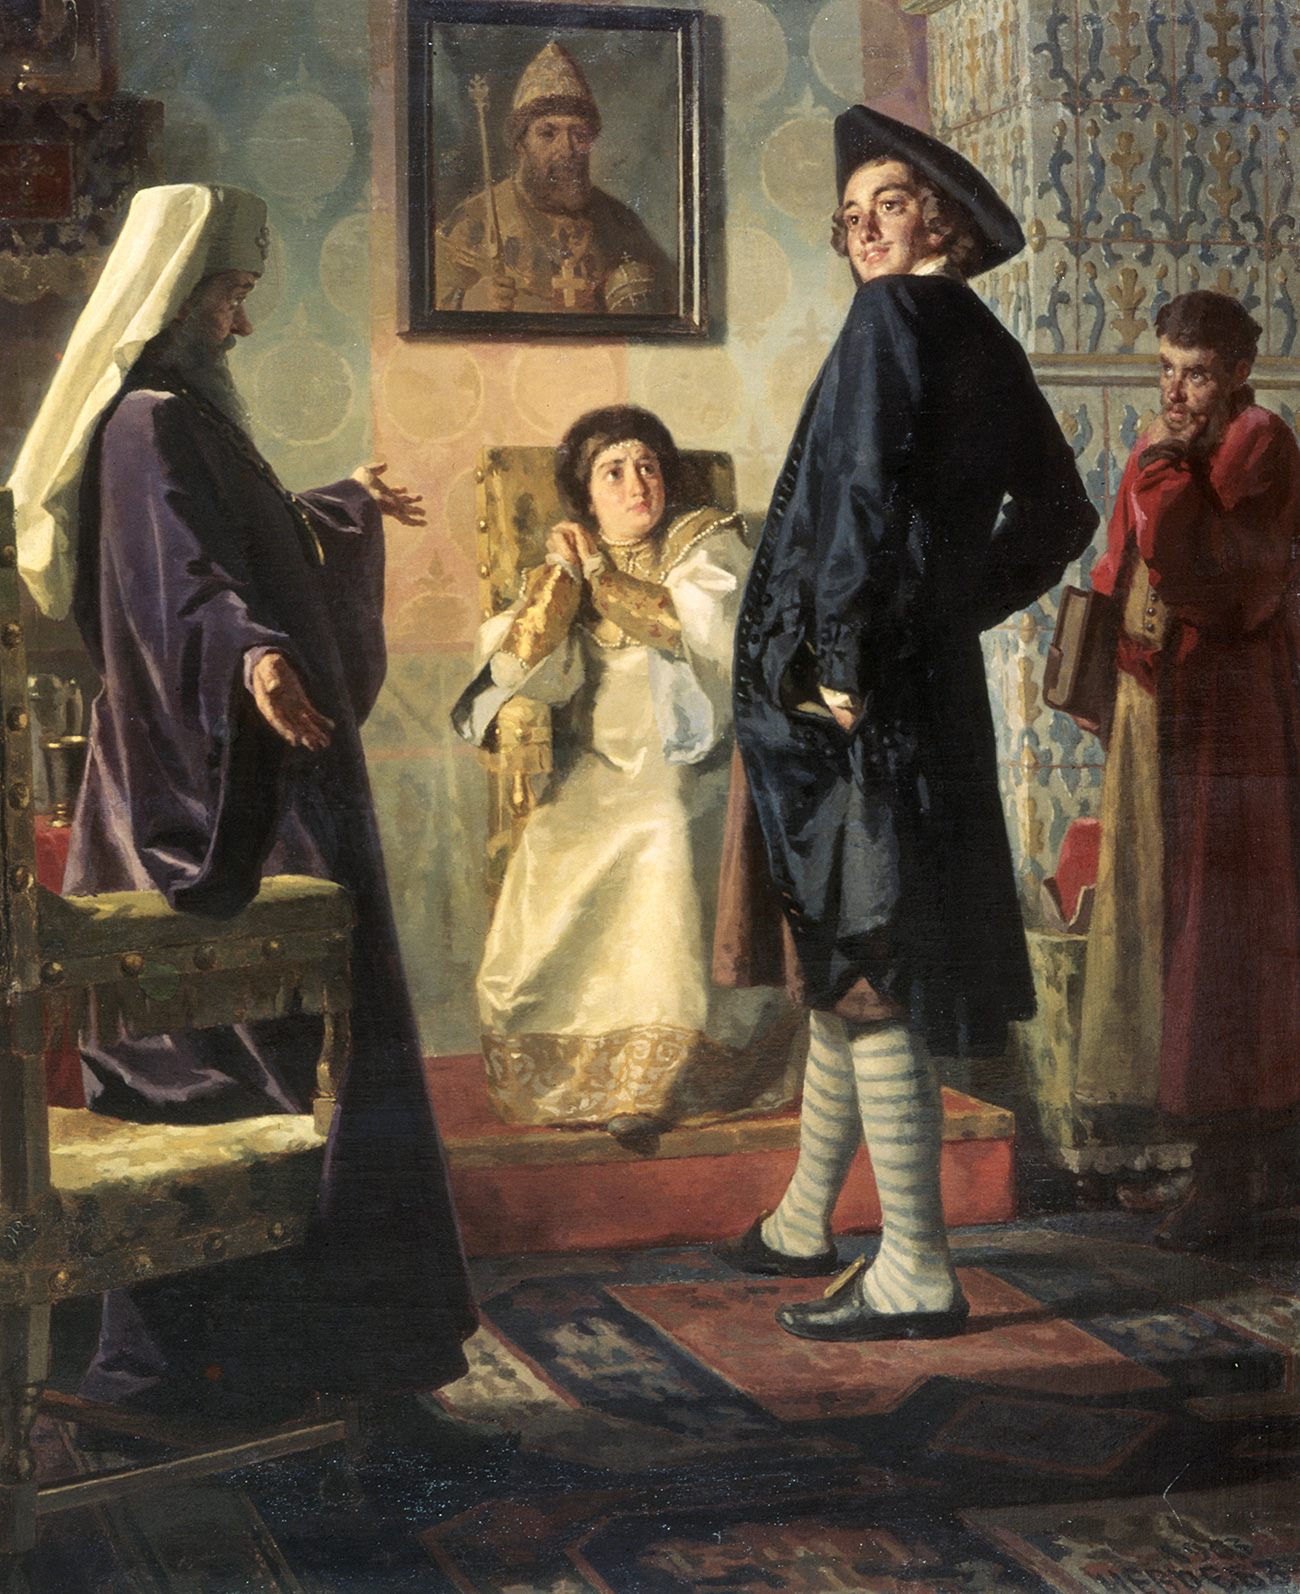 Pietro I in abiti occidentali, ritratto in esposizione al Museo d’Arte di Stavropol. Fonte: Global Look Press